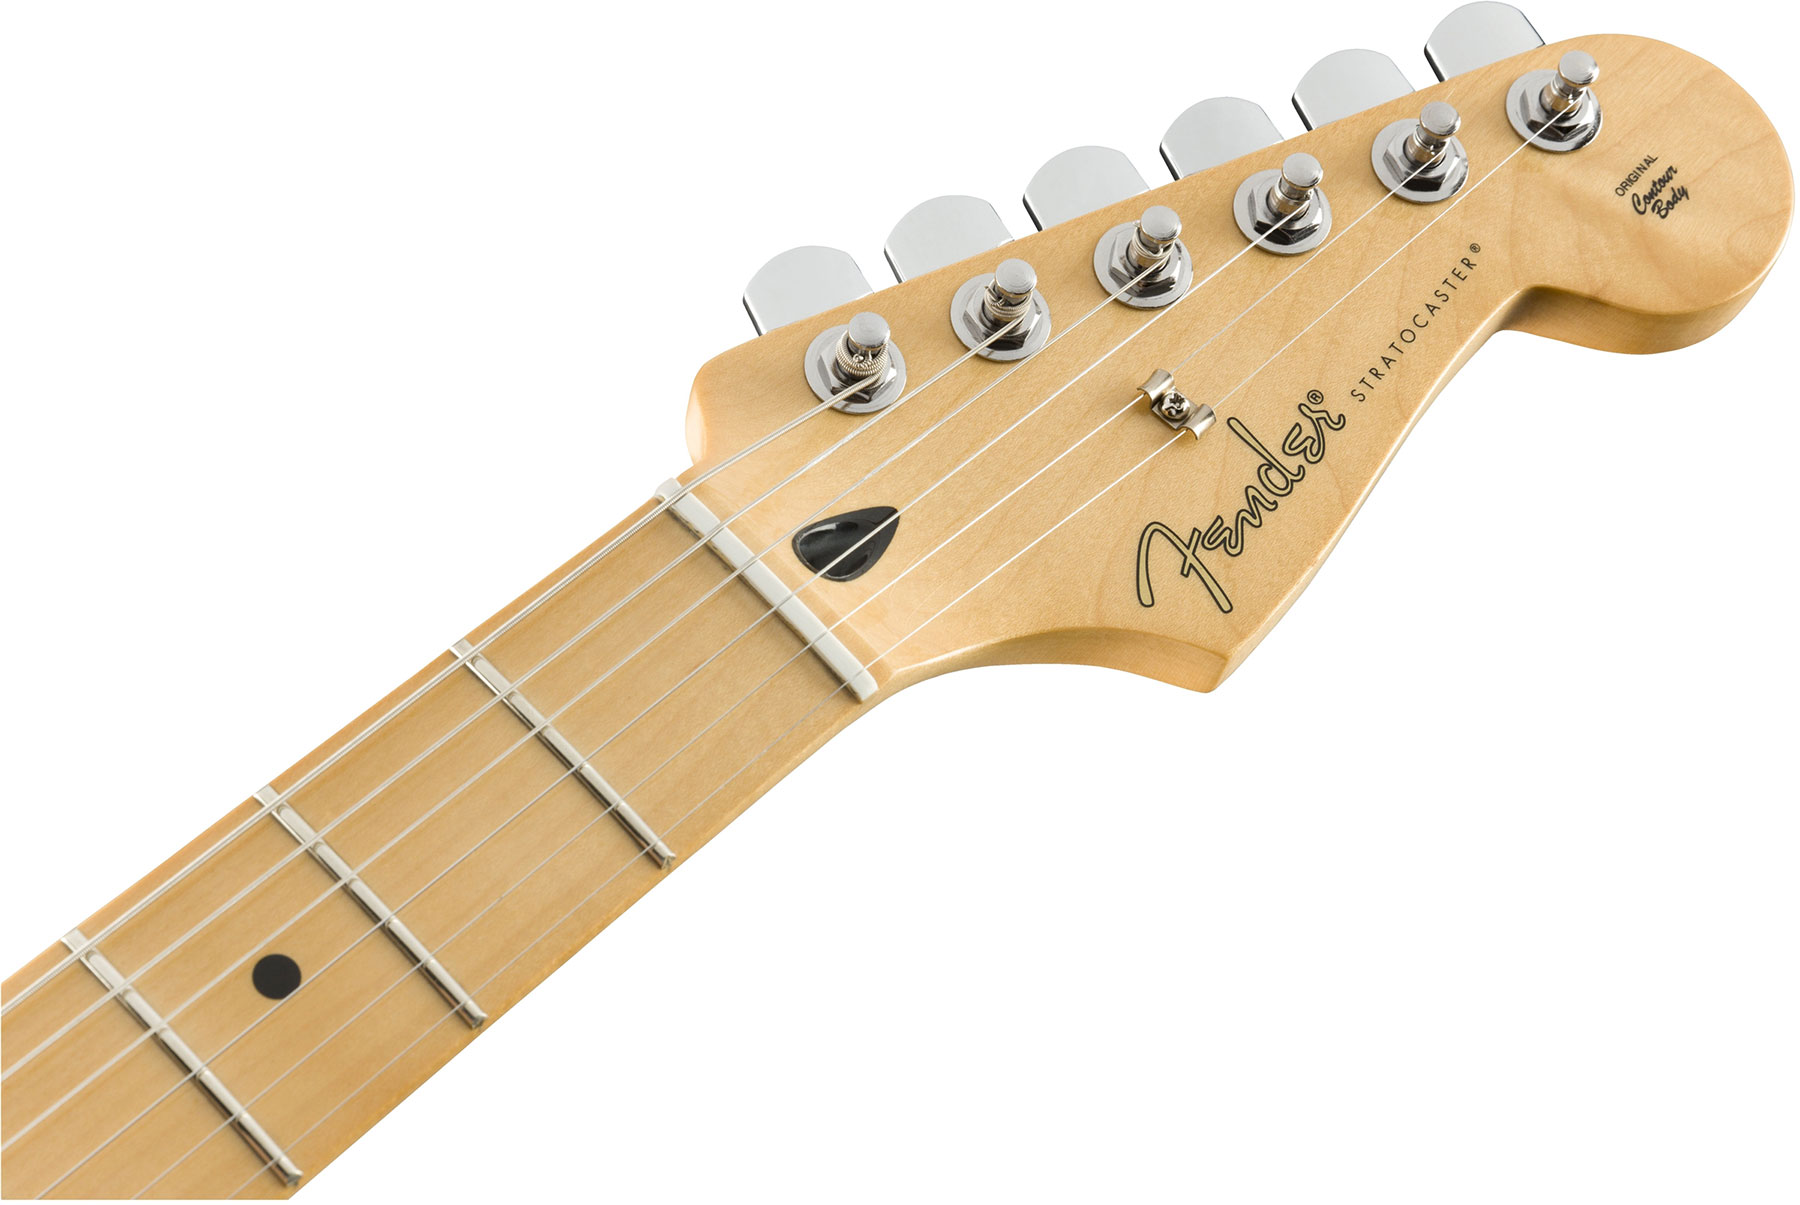 Fender Strat Player Mex Hss Mn - 3-color Sunburst - E-Gitarre in Str-Form - Variation 3